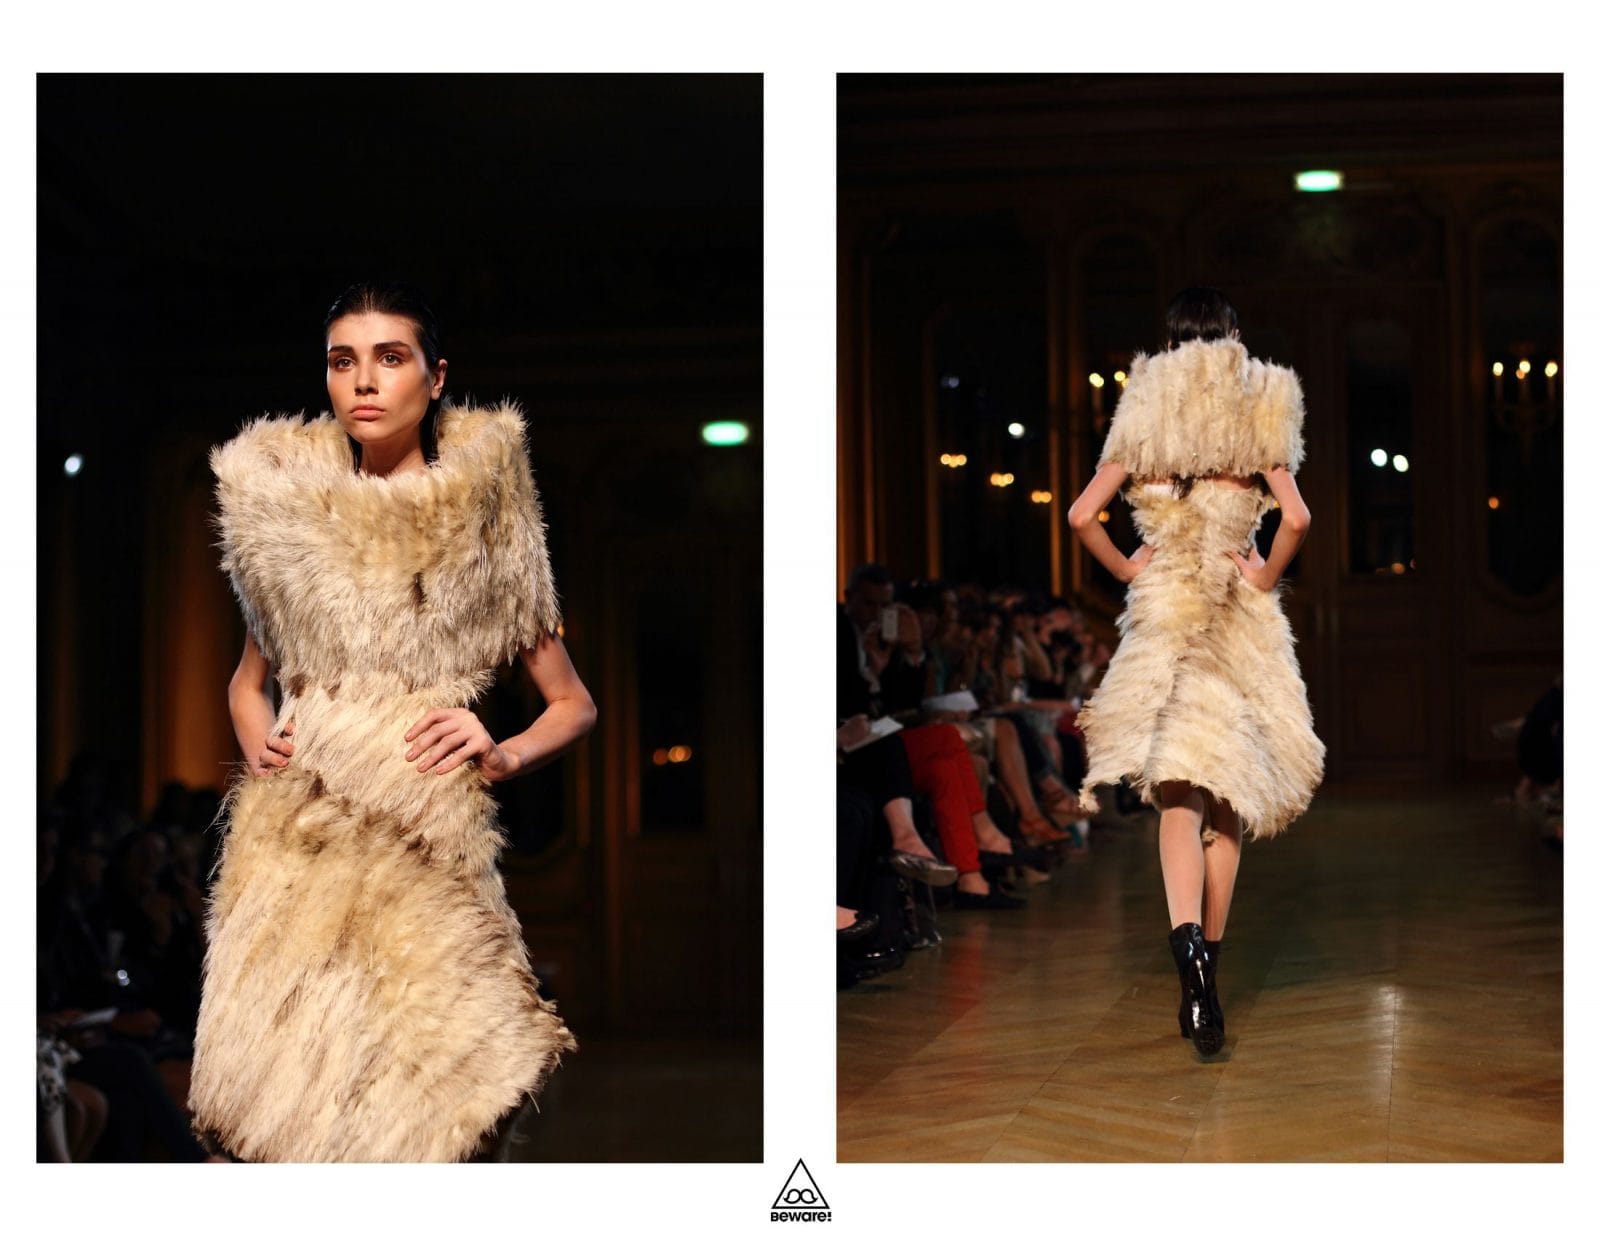 Défilé Haute Couture 2012/13 : Serkan Cura 16